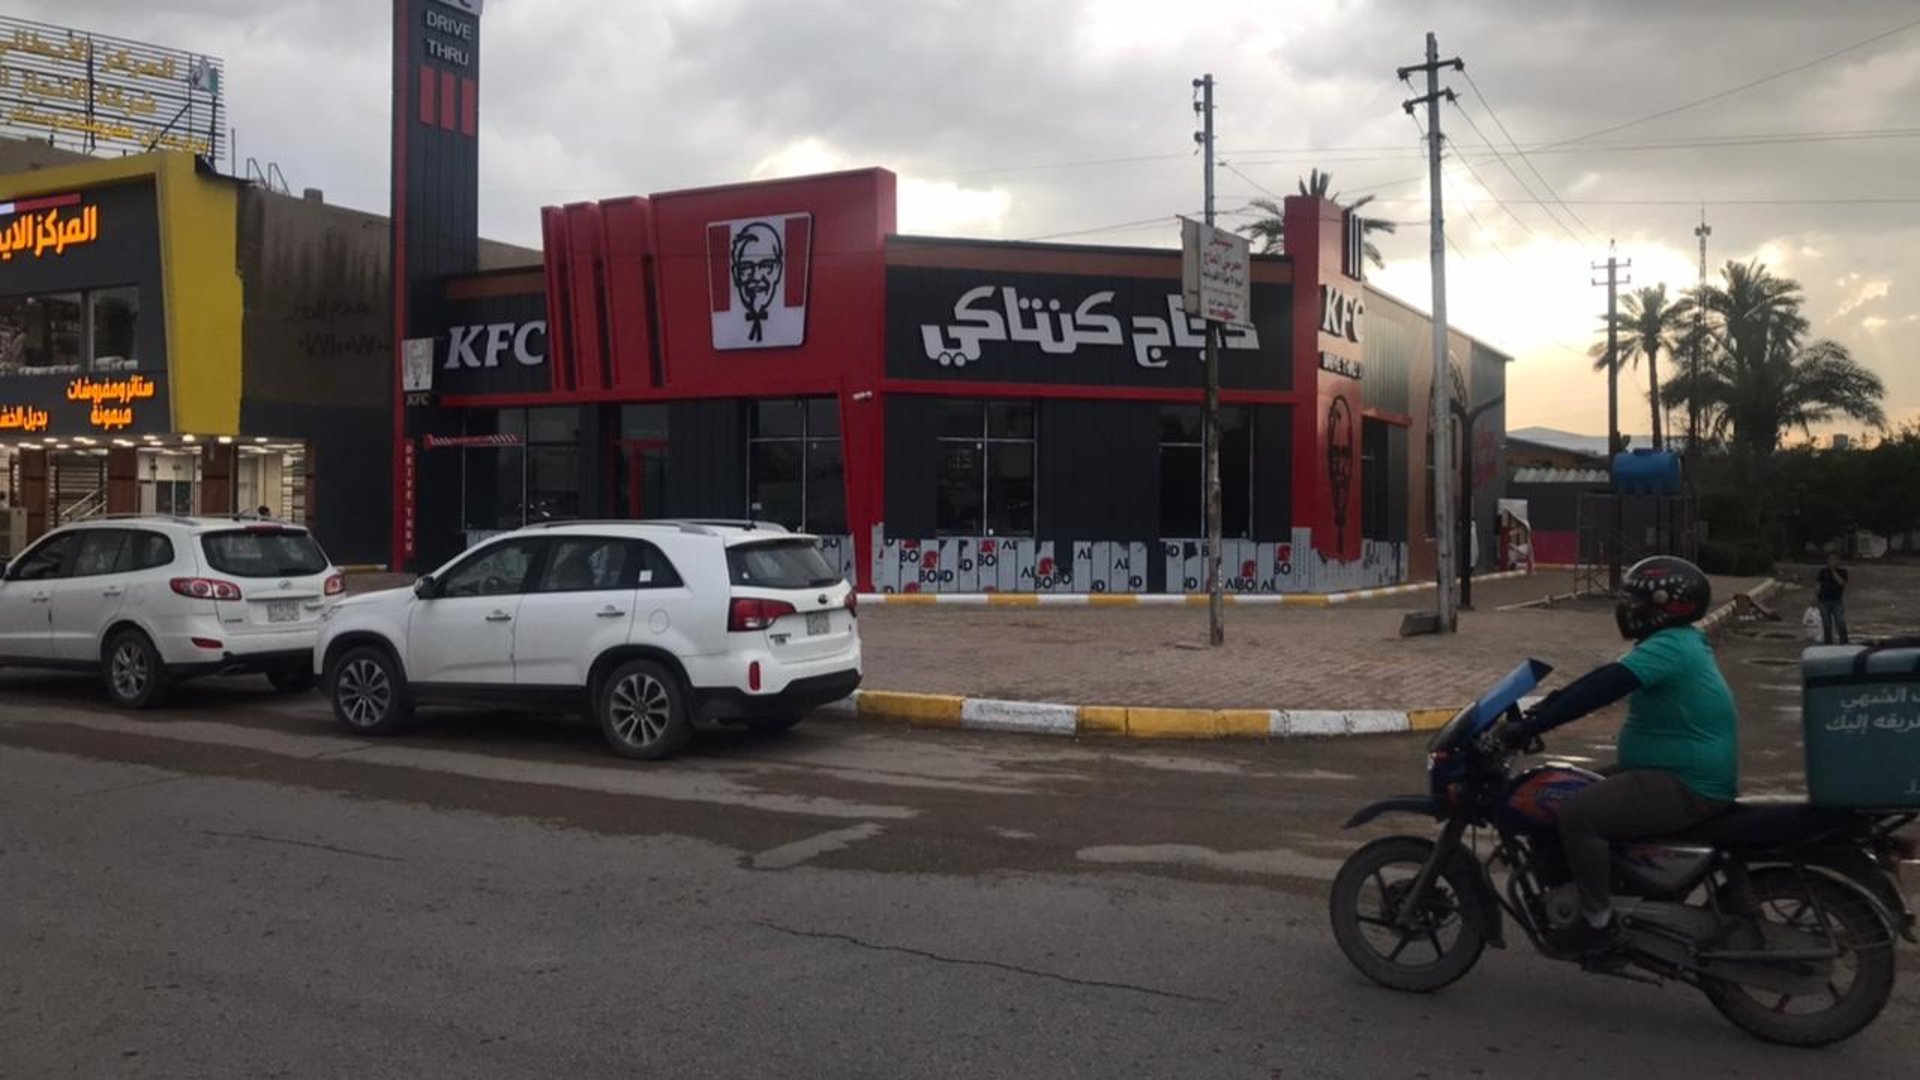 مطعم أمريكي جديد في بغداد.. حي الجامعة يسأل: هل المقاطعة مجدية أم لا؟ (صور)